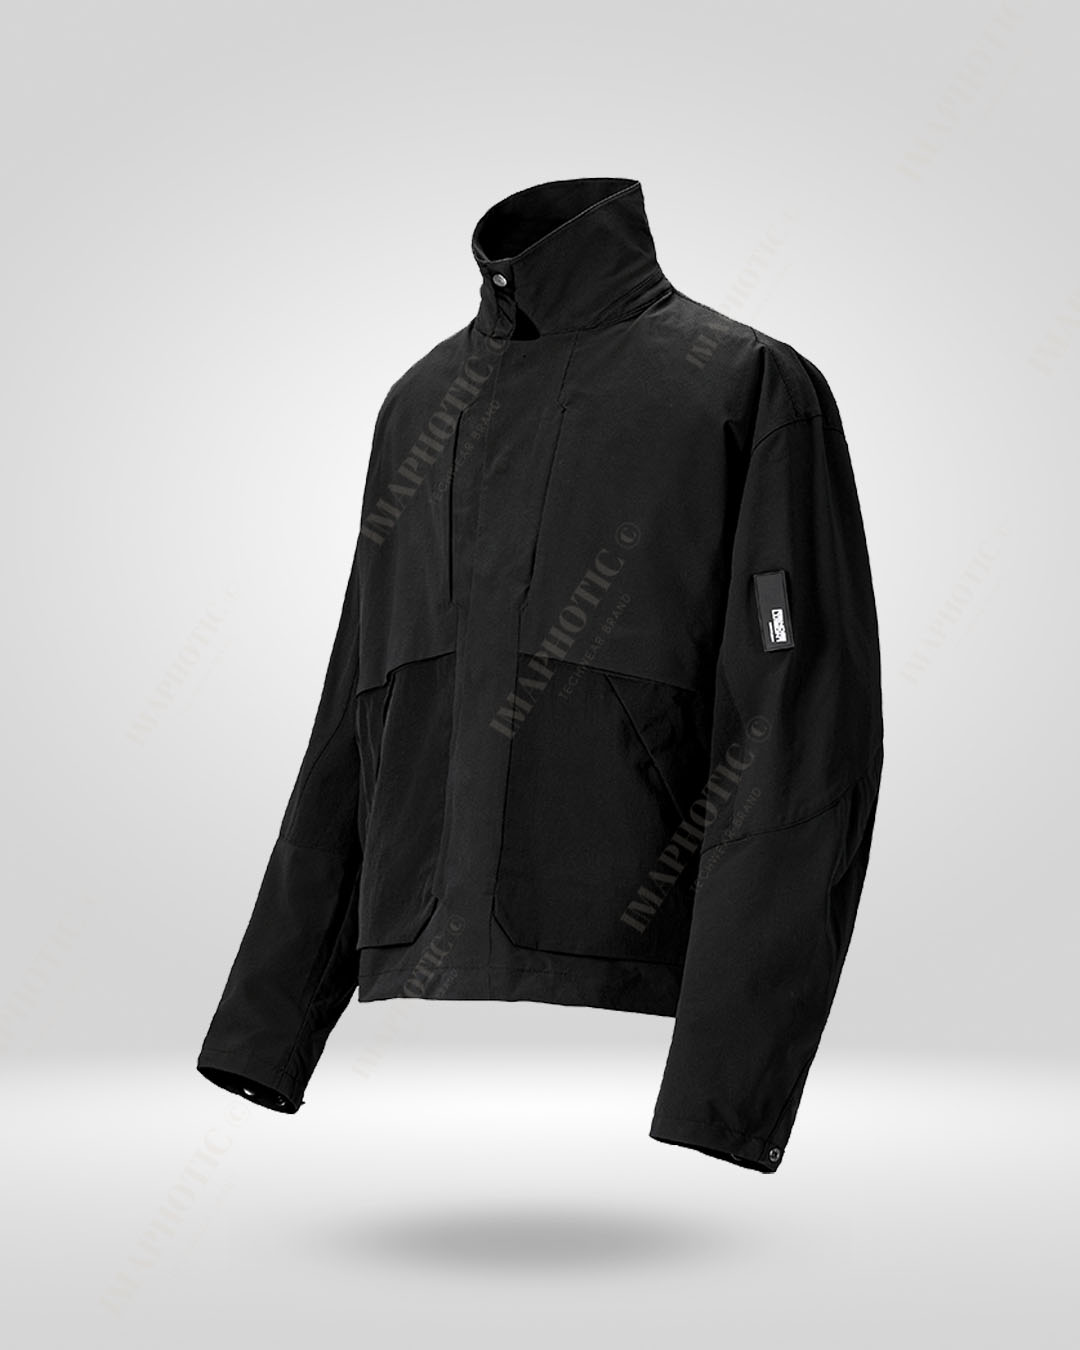 Versatile Harrington Jacket - Waterproof & Convertible Design